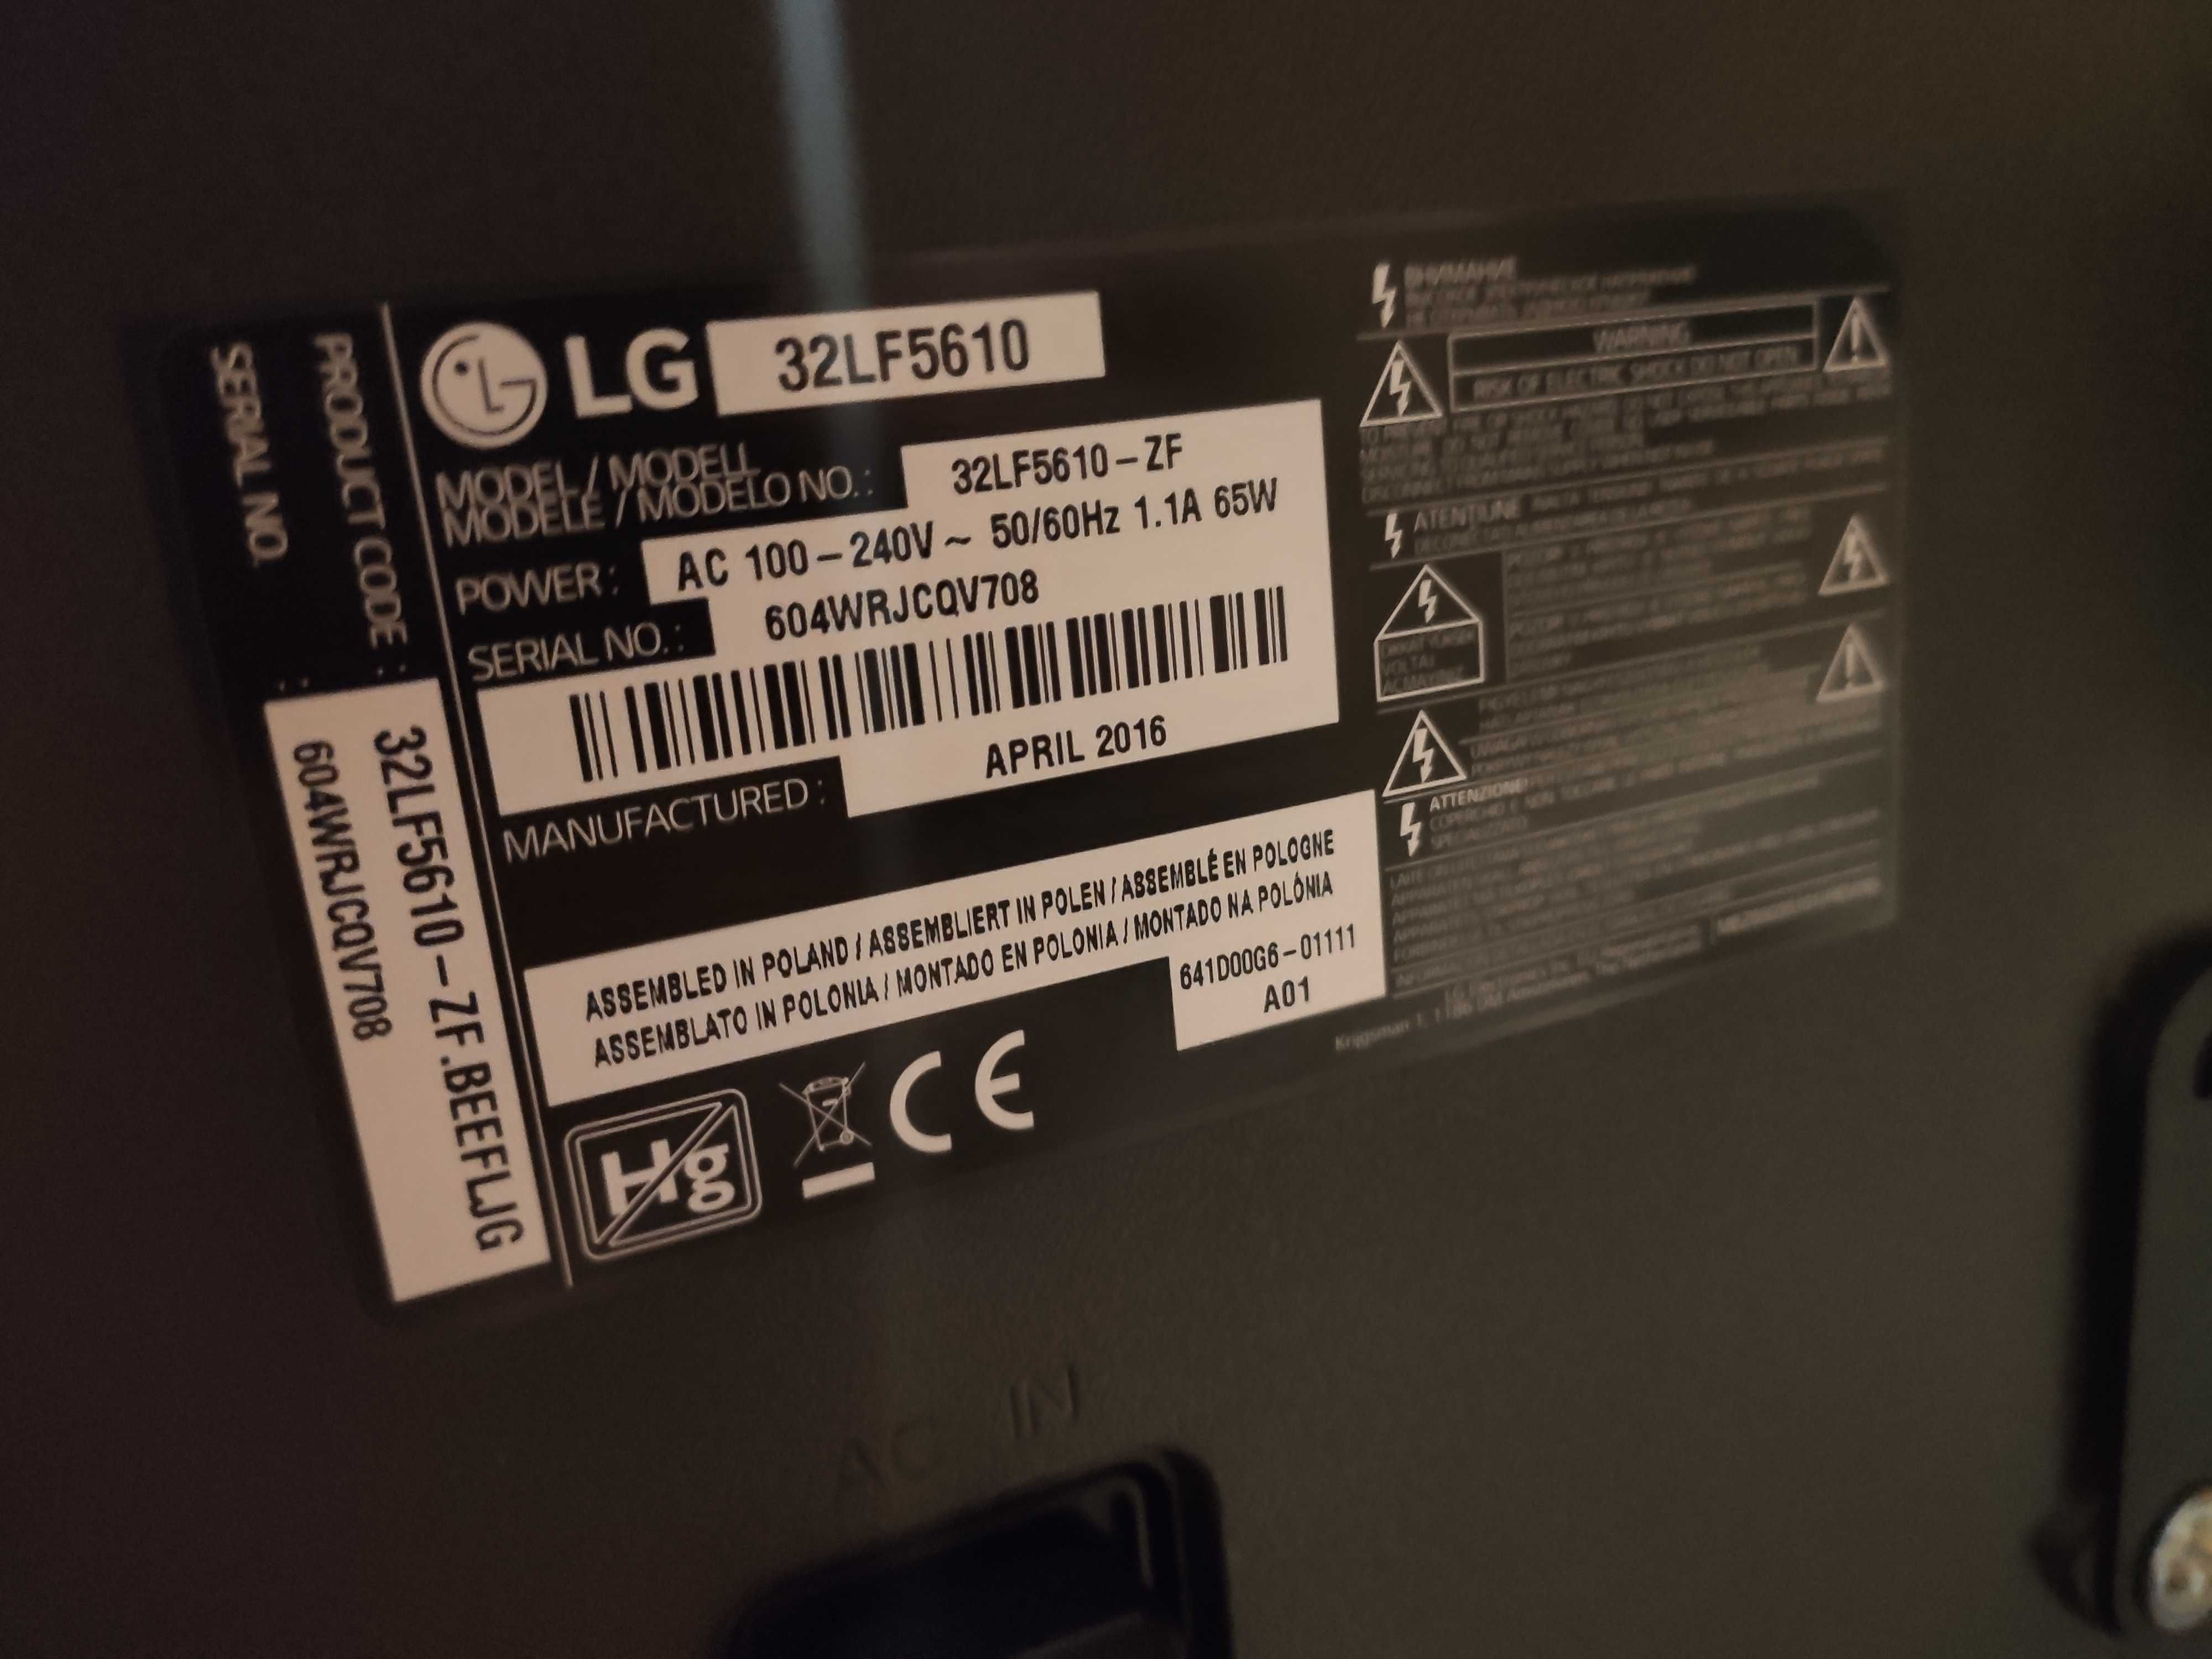 LG32lf5610 бита матрицаНАзапчастиПлатыРодные подсветку недавно сменили